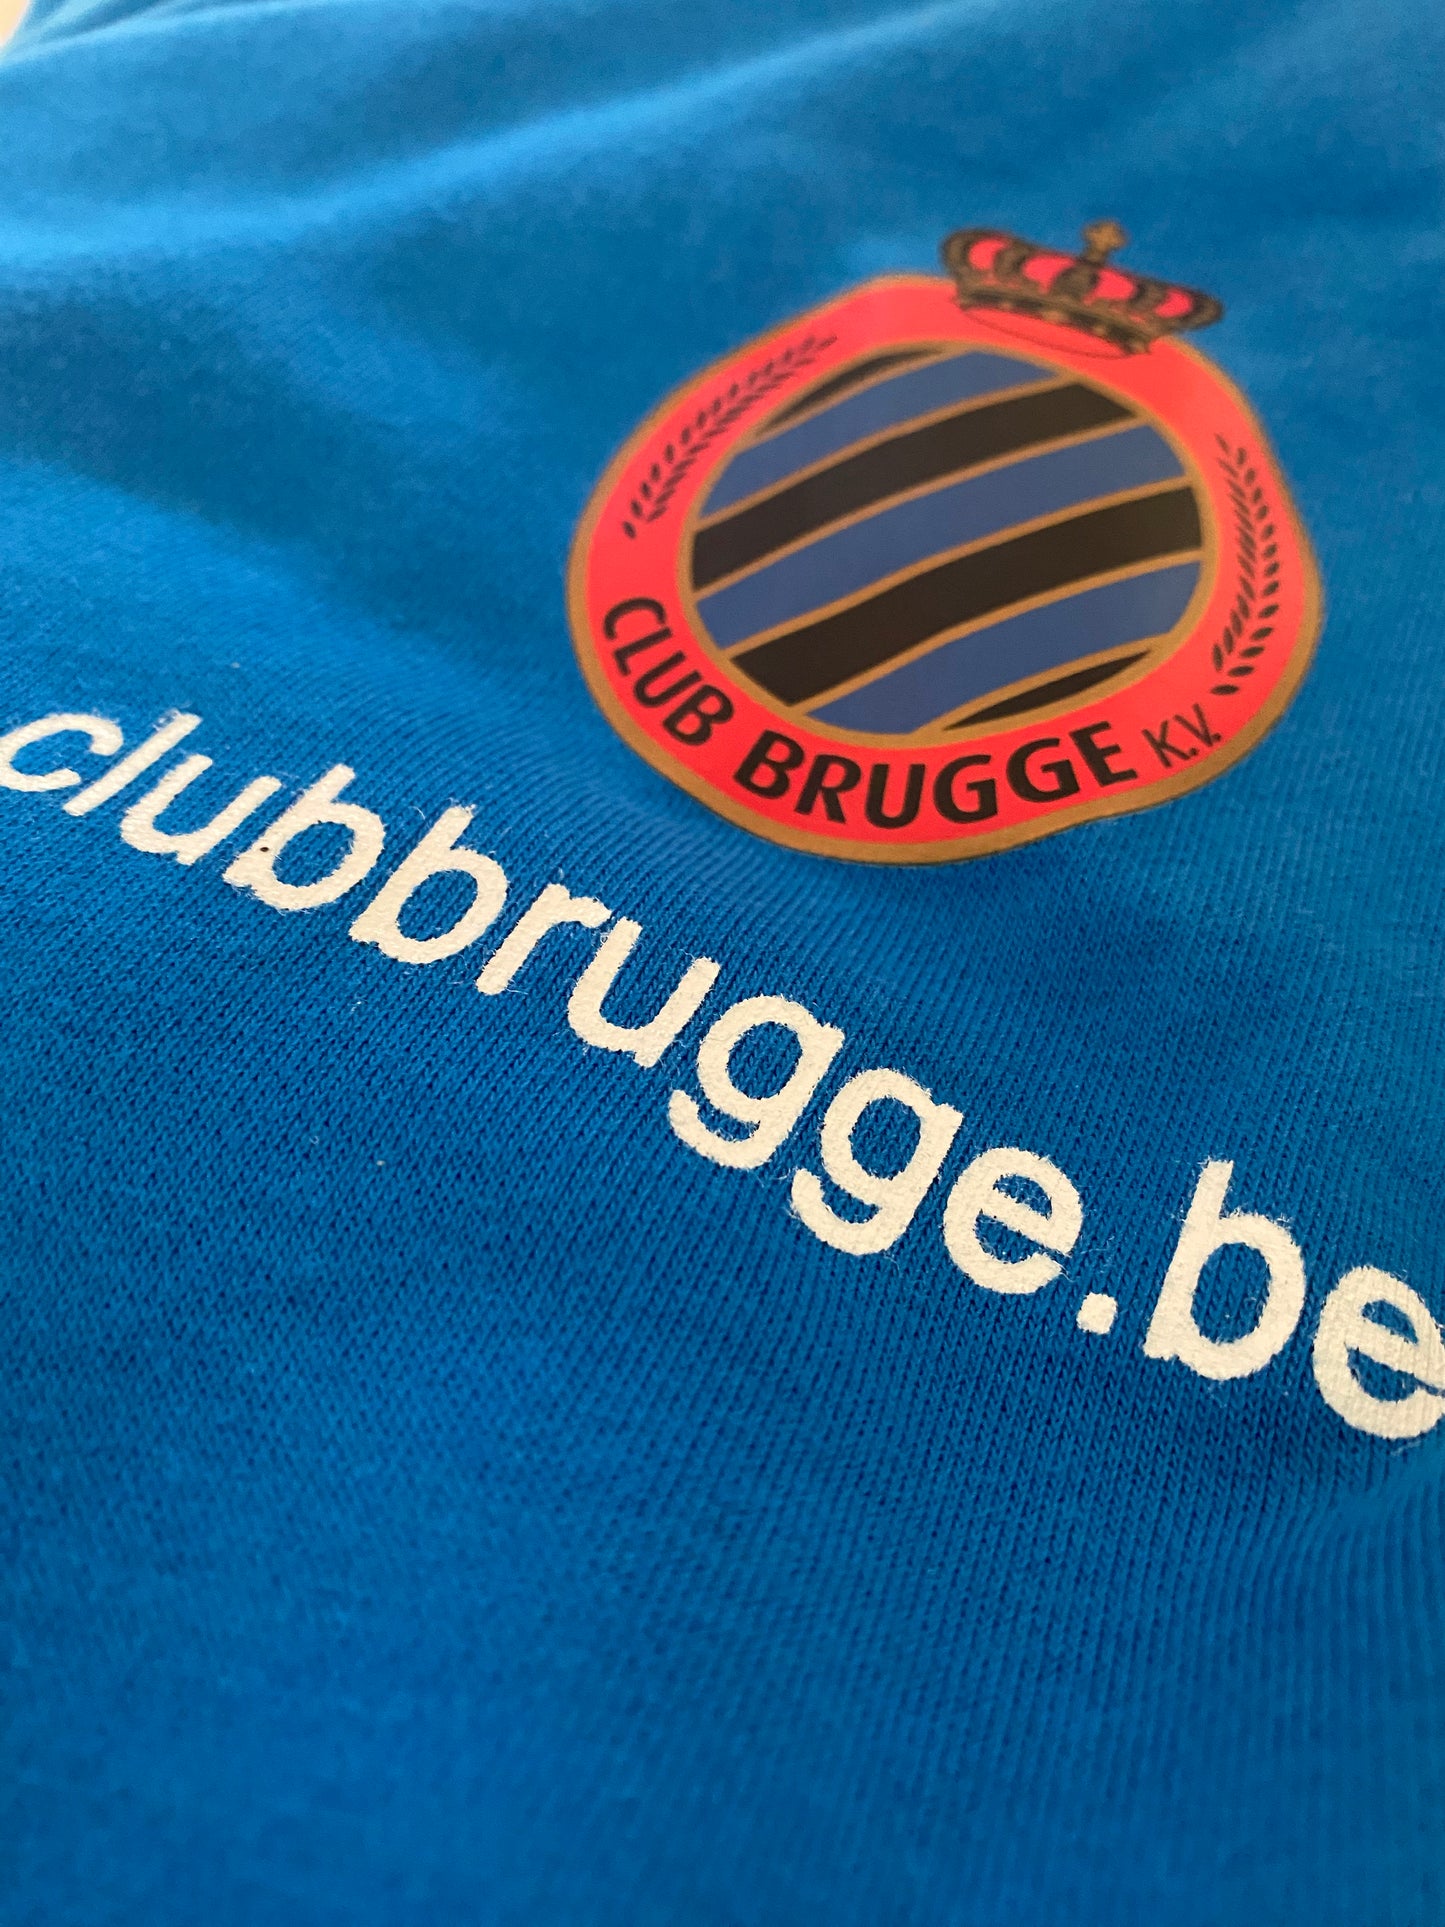 Club Brugge Pullover (Puma)